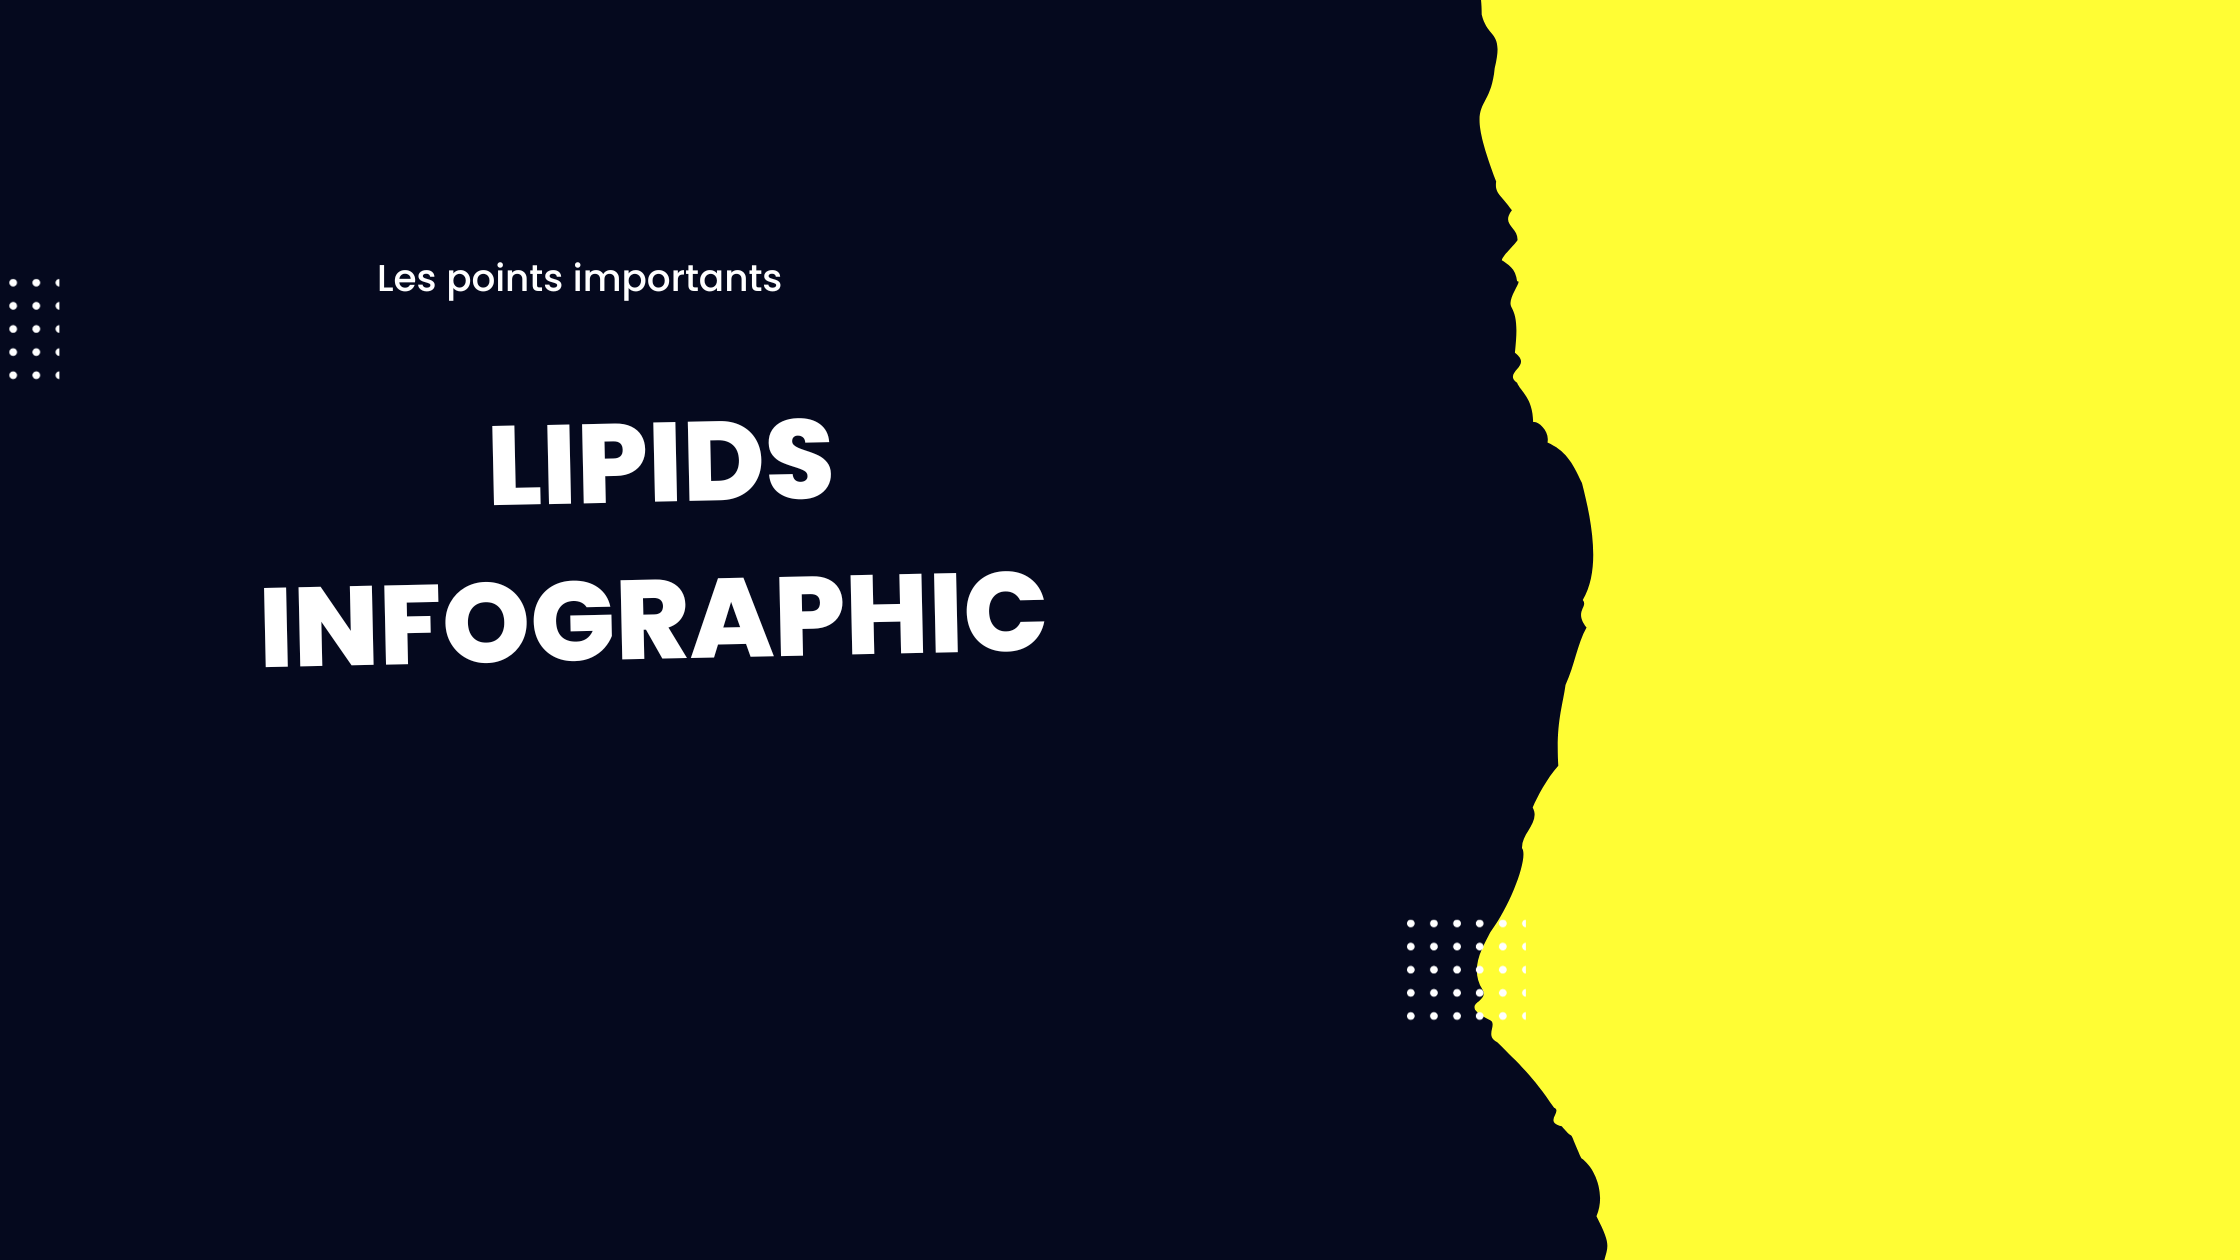 lipids infographic | Les points importants